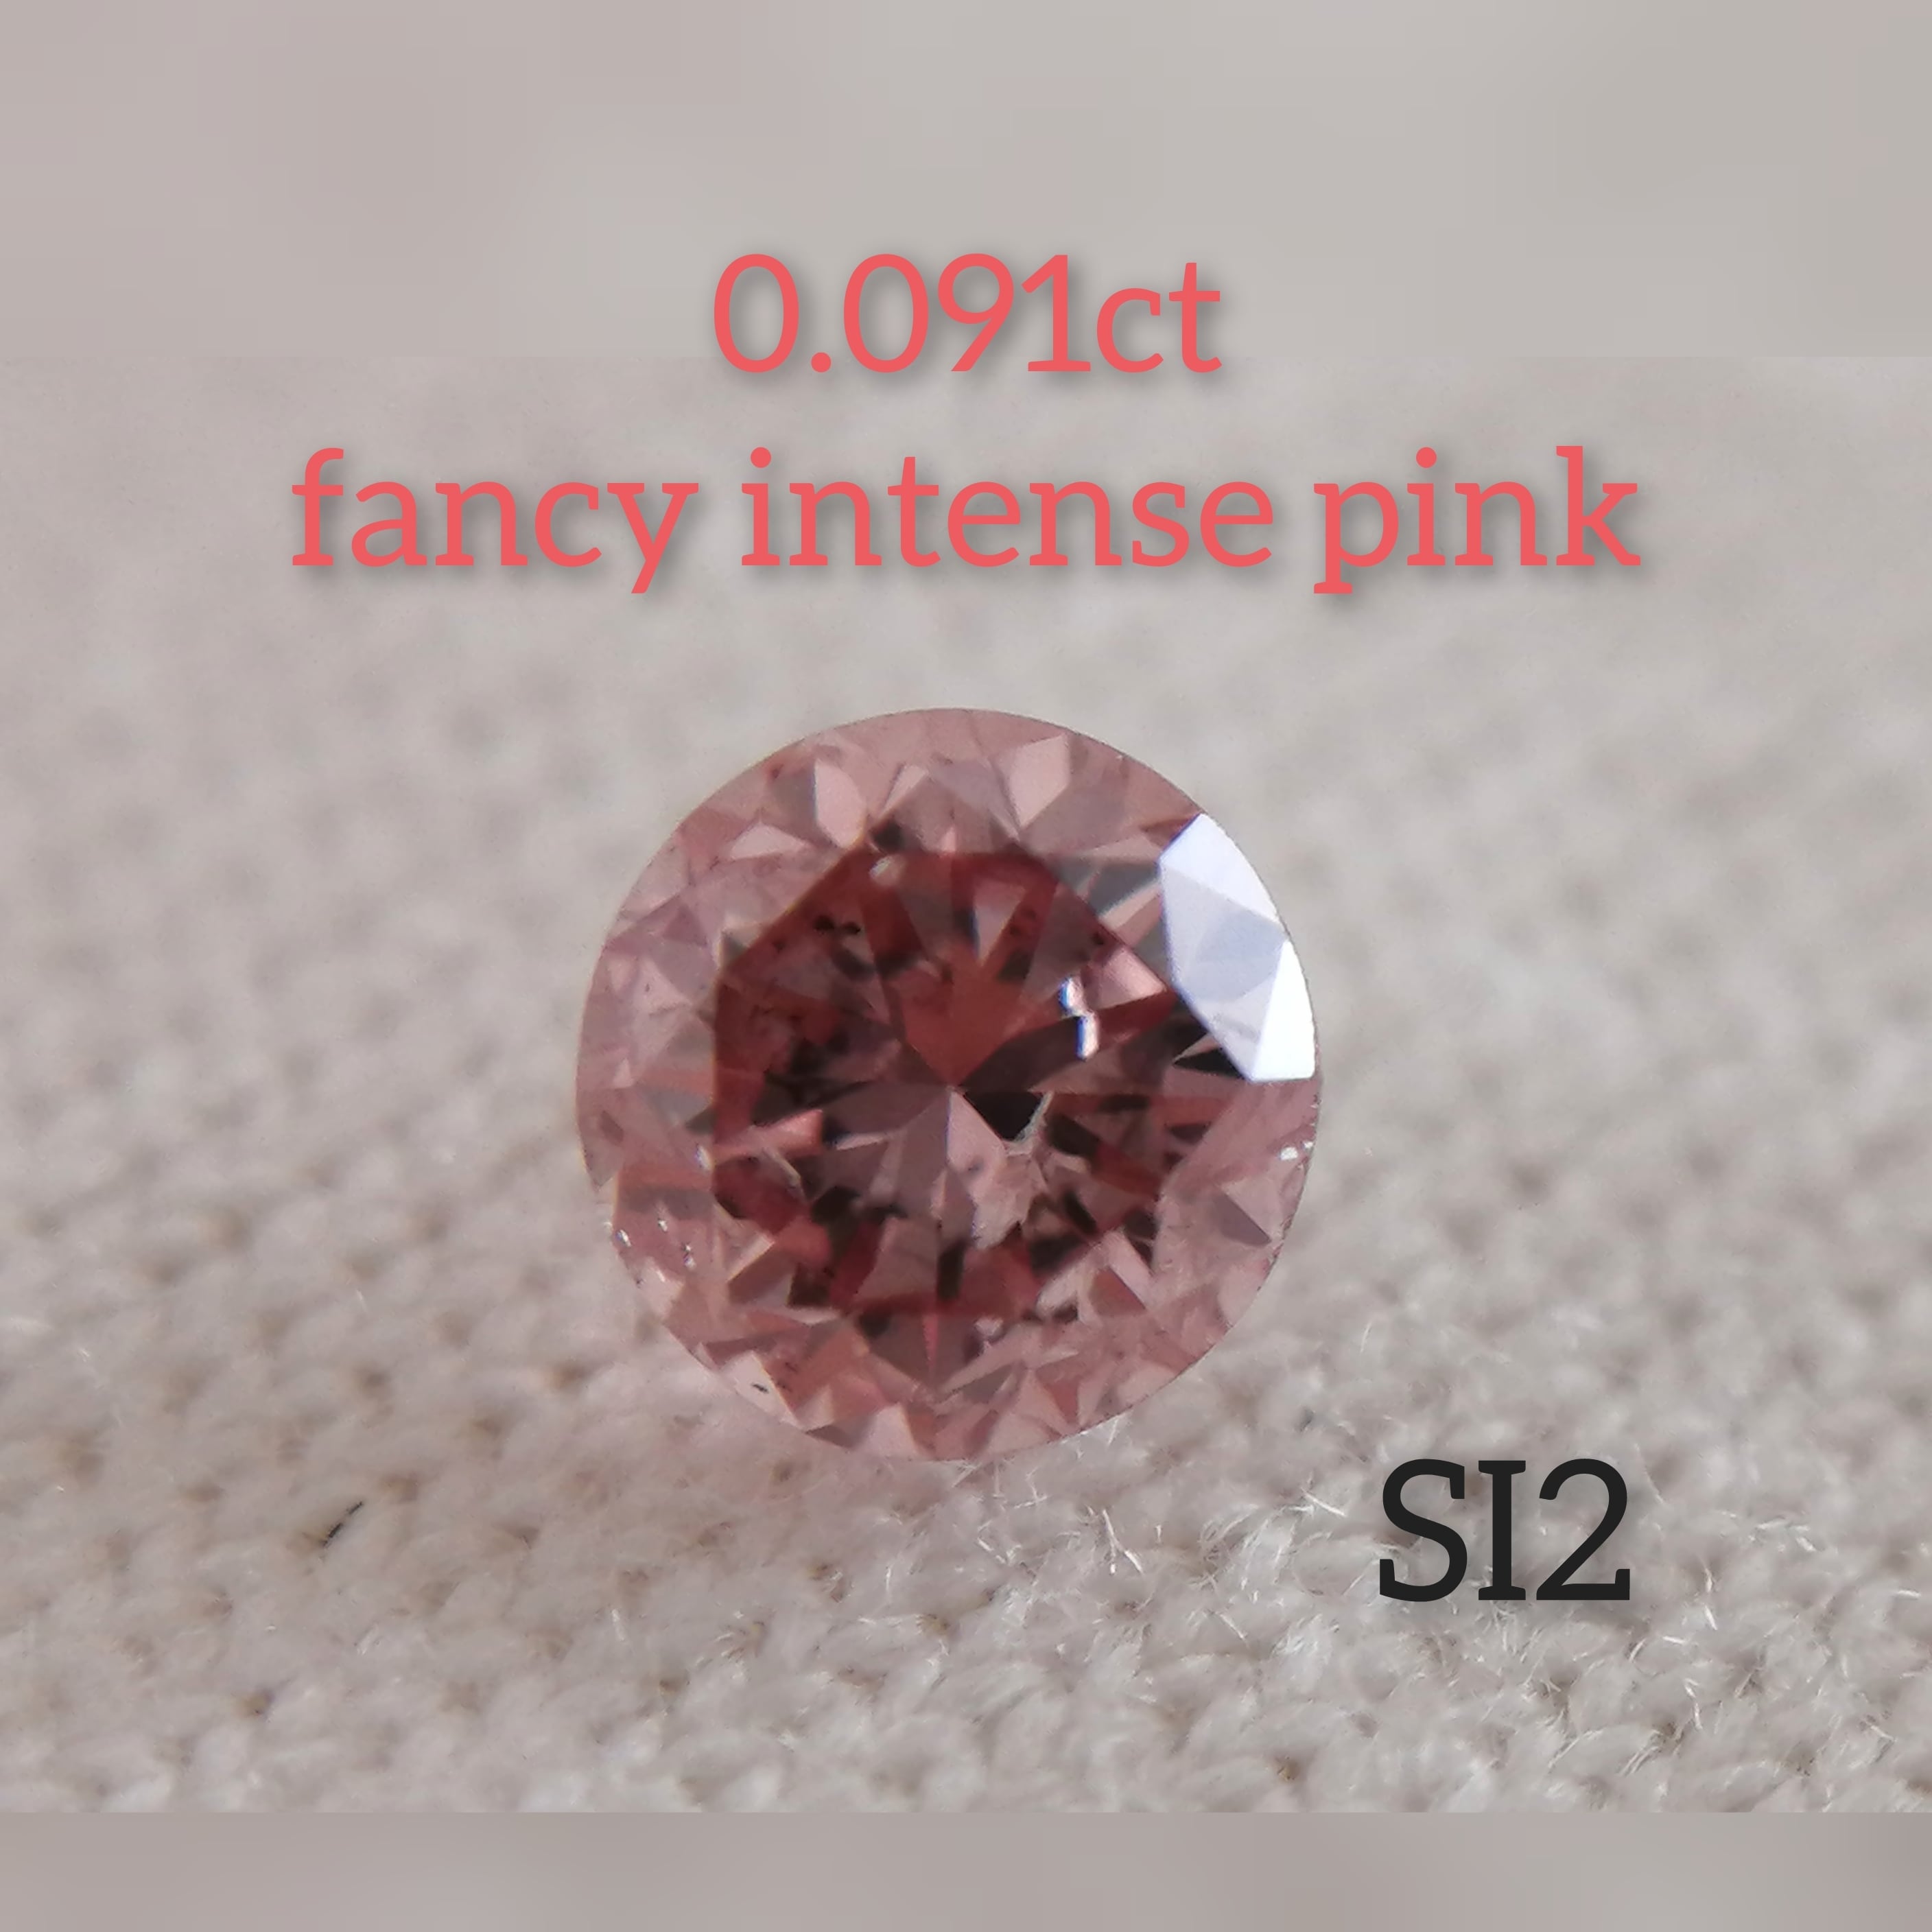 ピンクダイヤモンドルース 0.091ct fancy intense pink SI2(CGL ...